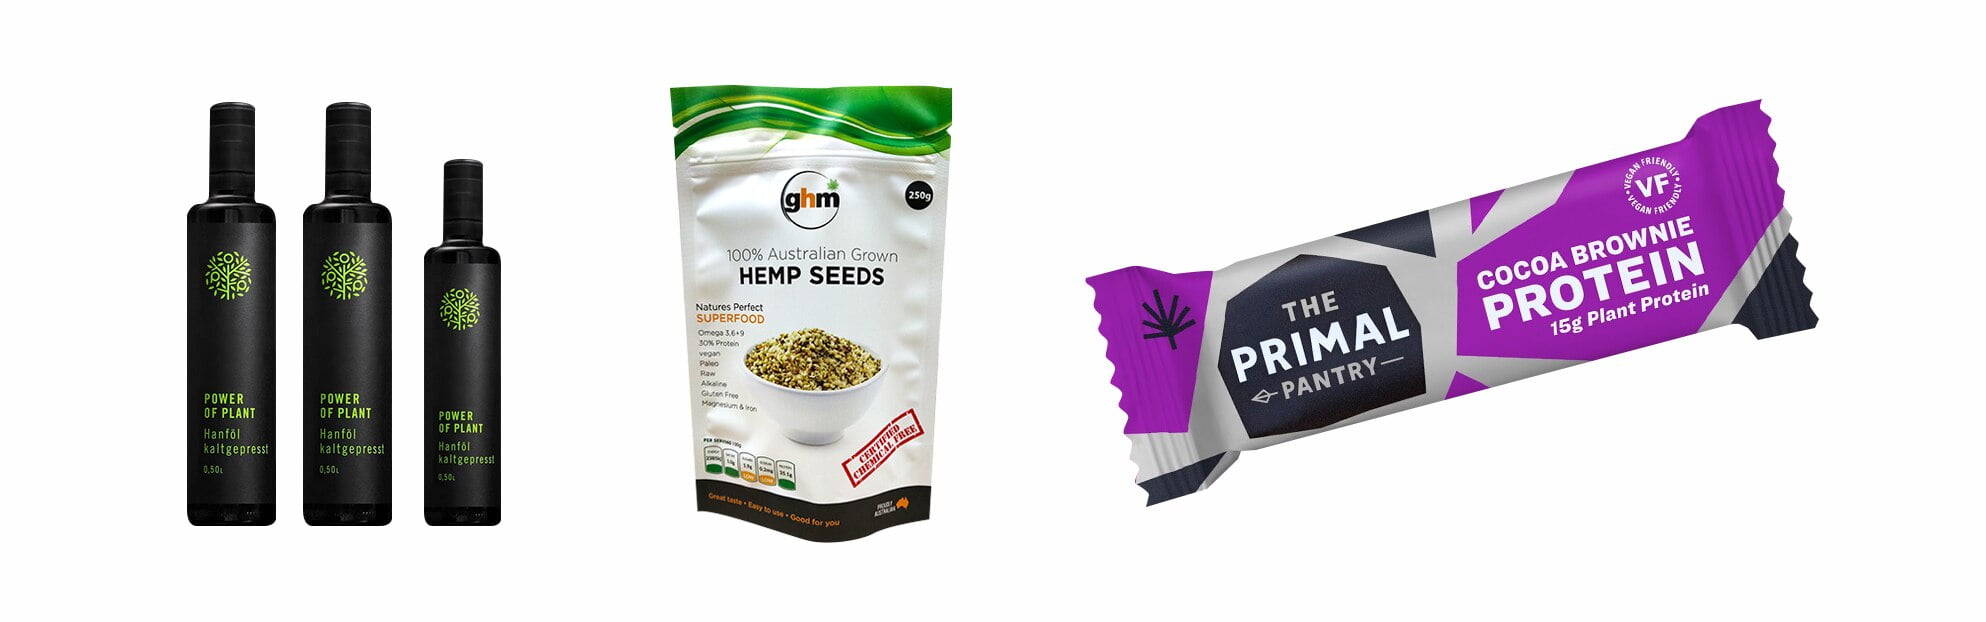 hemp-oil-hemp-seeds-hemp-protein-packaging-solutions.jpg